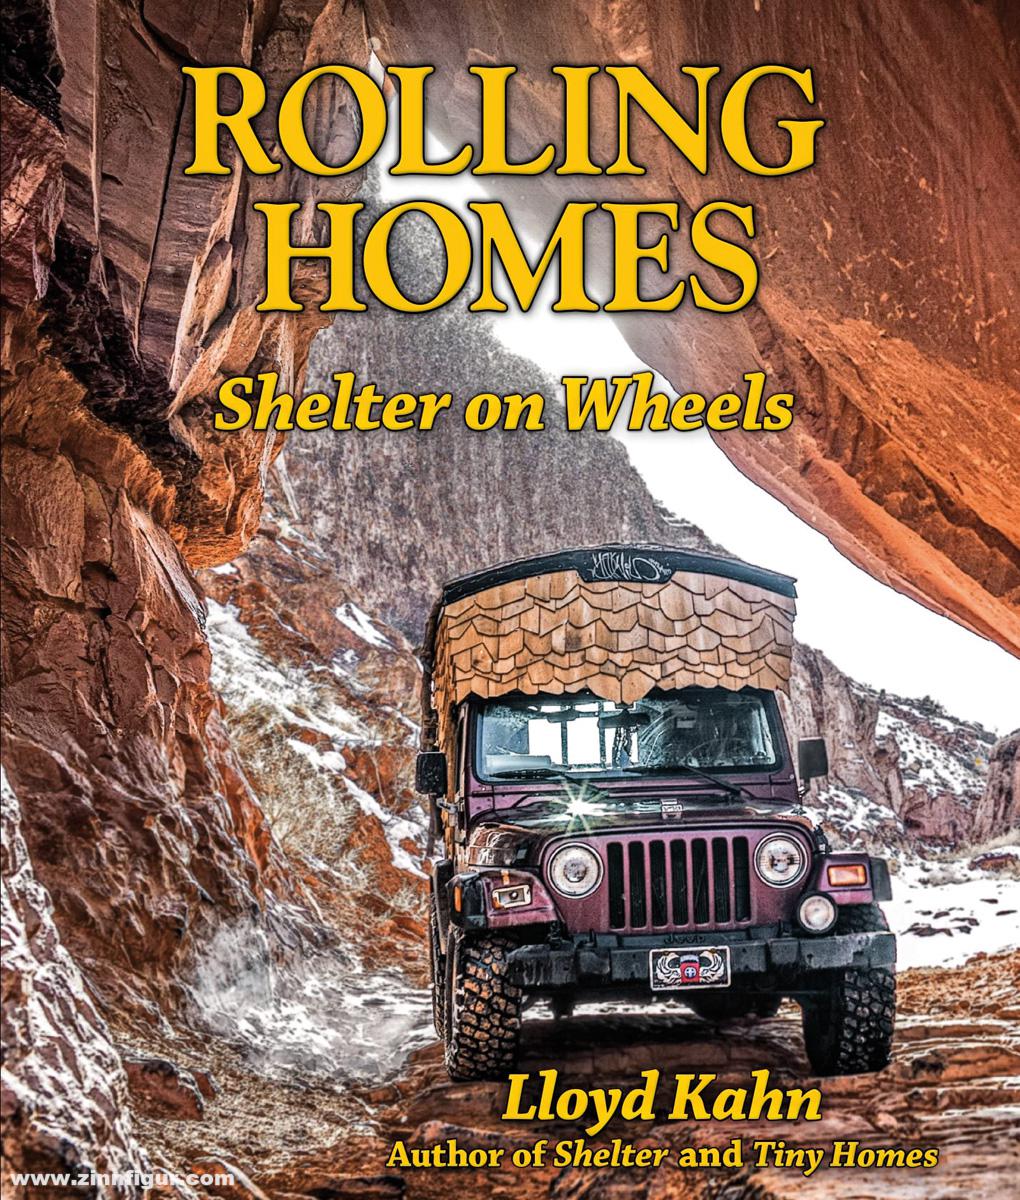 Amber Books Kahn, Lloyd: Rolling Homes. Shelter on Wheels